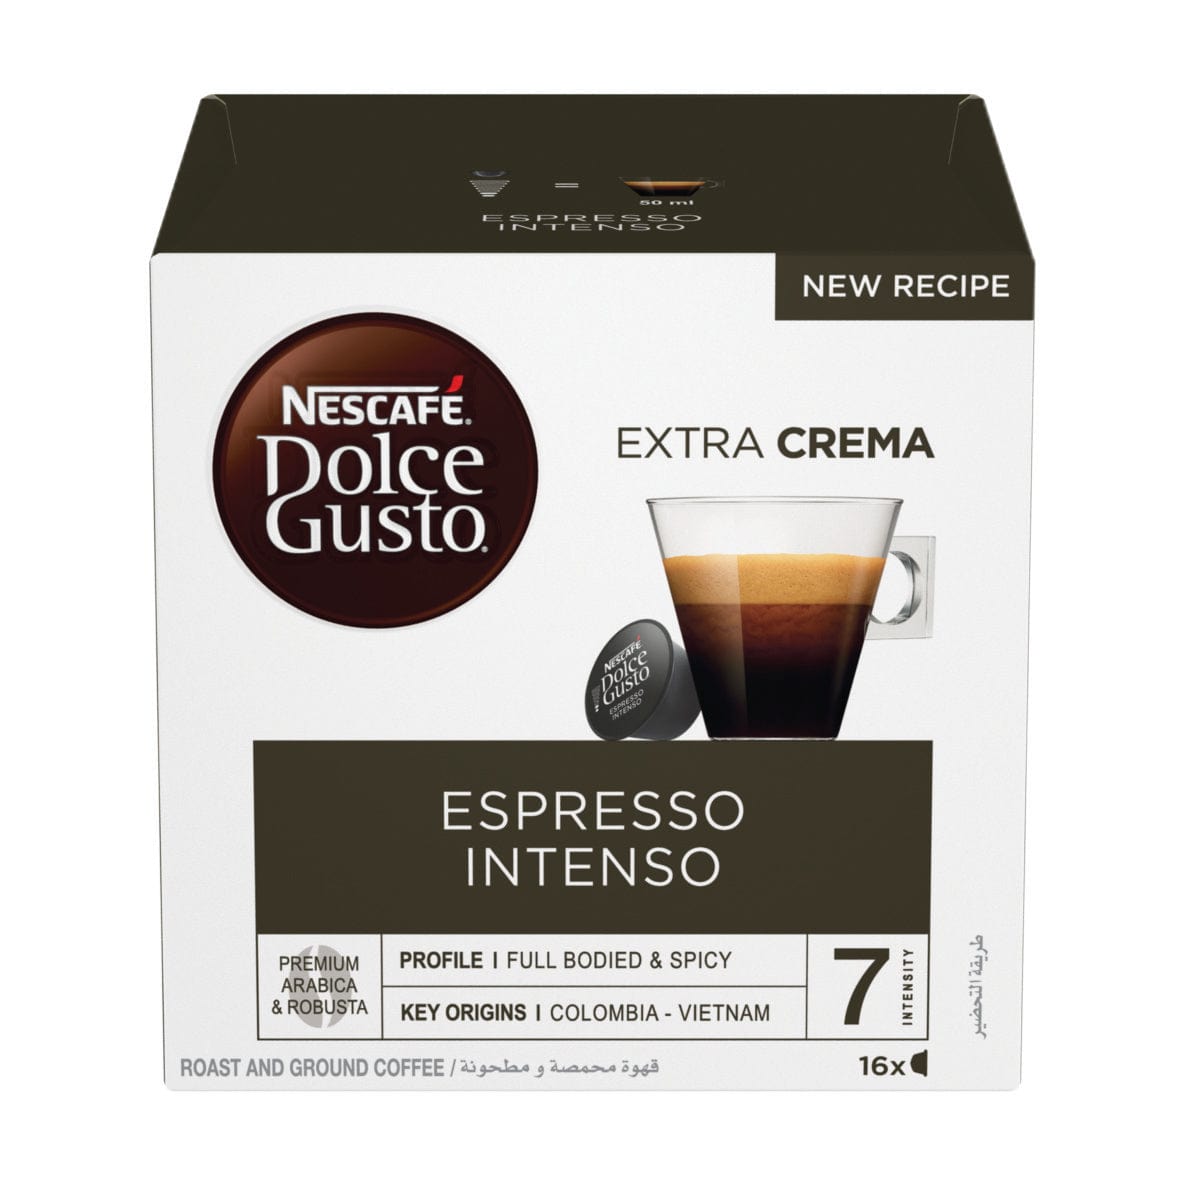 Nescafe Dolce Gusto Espresso Intenso